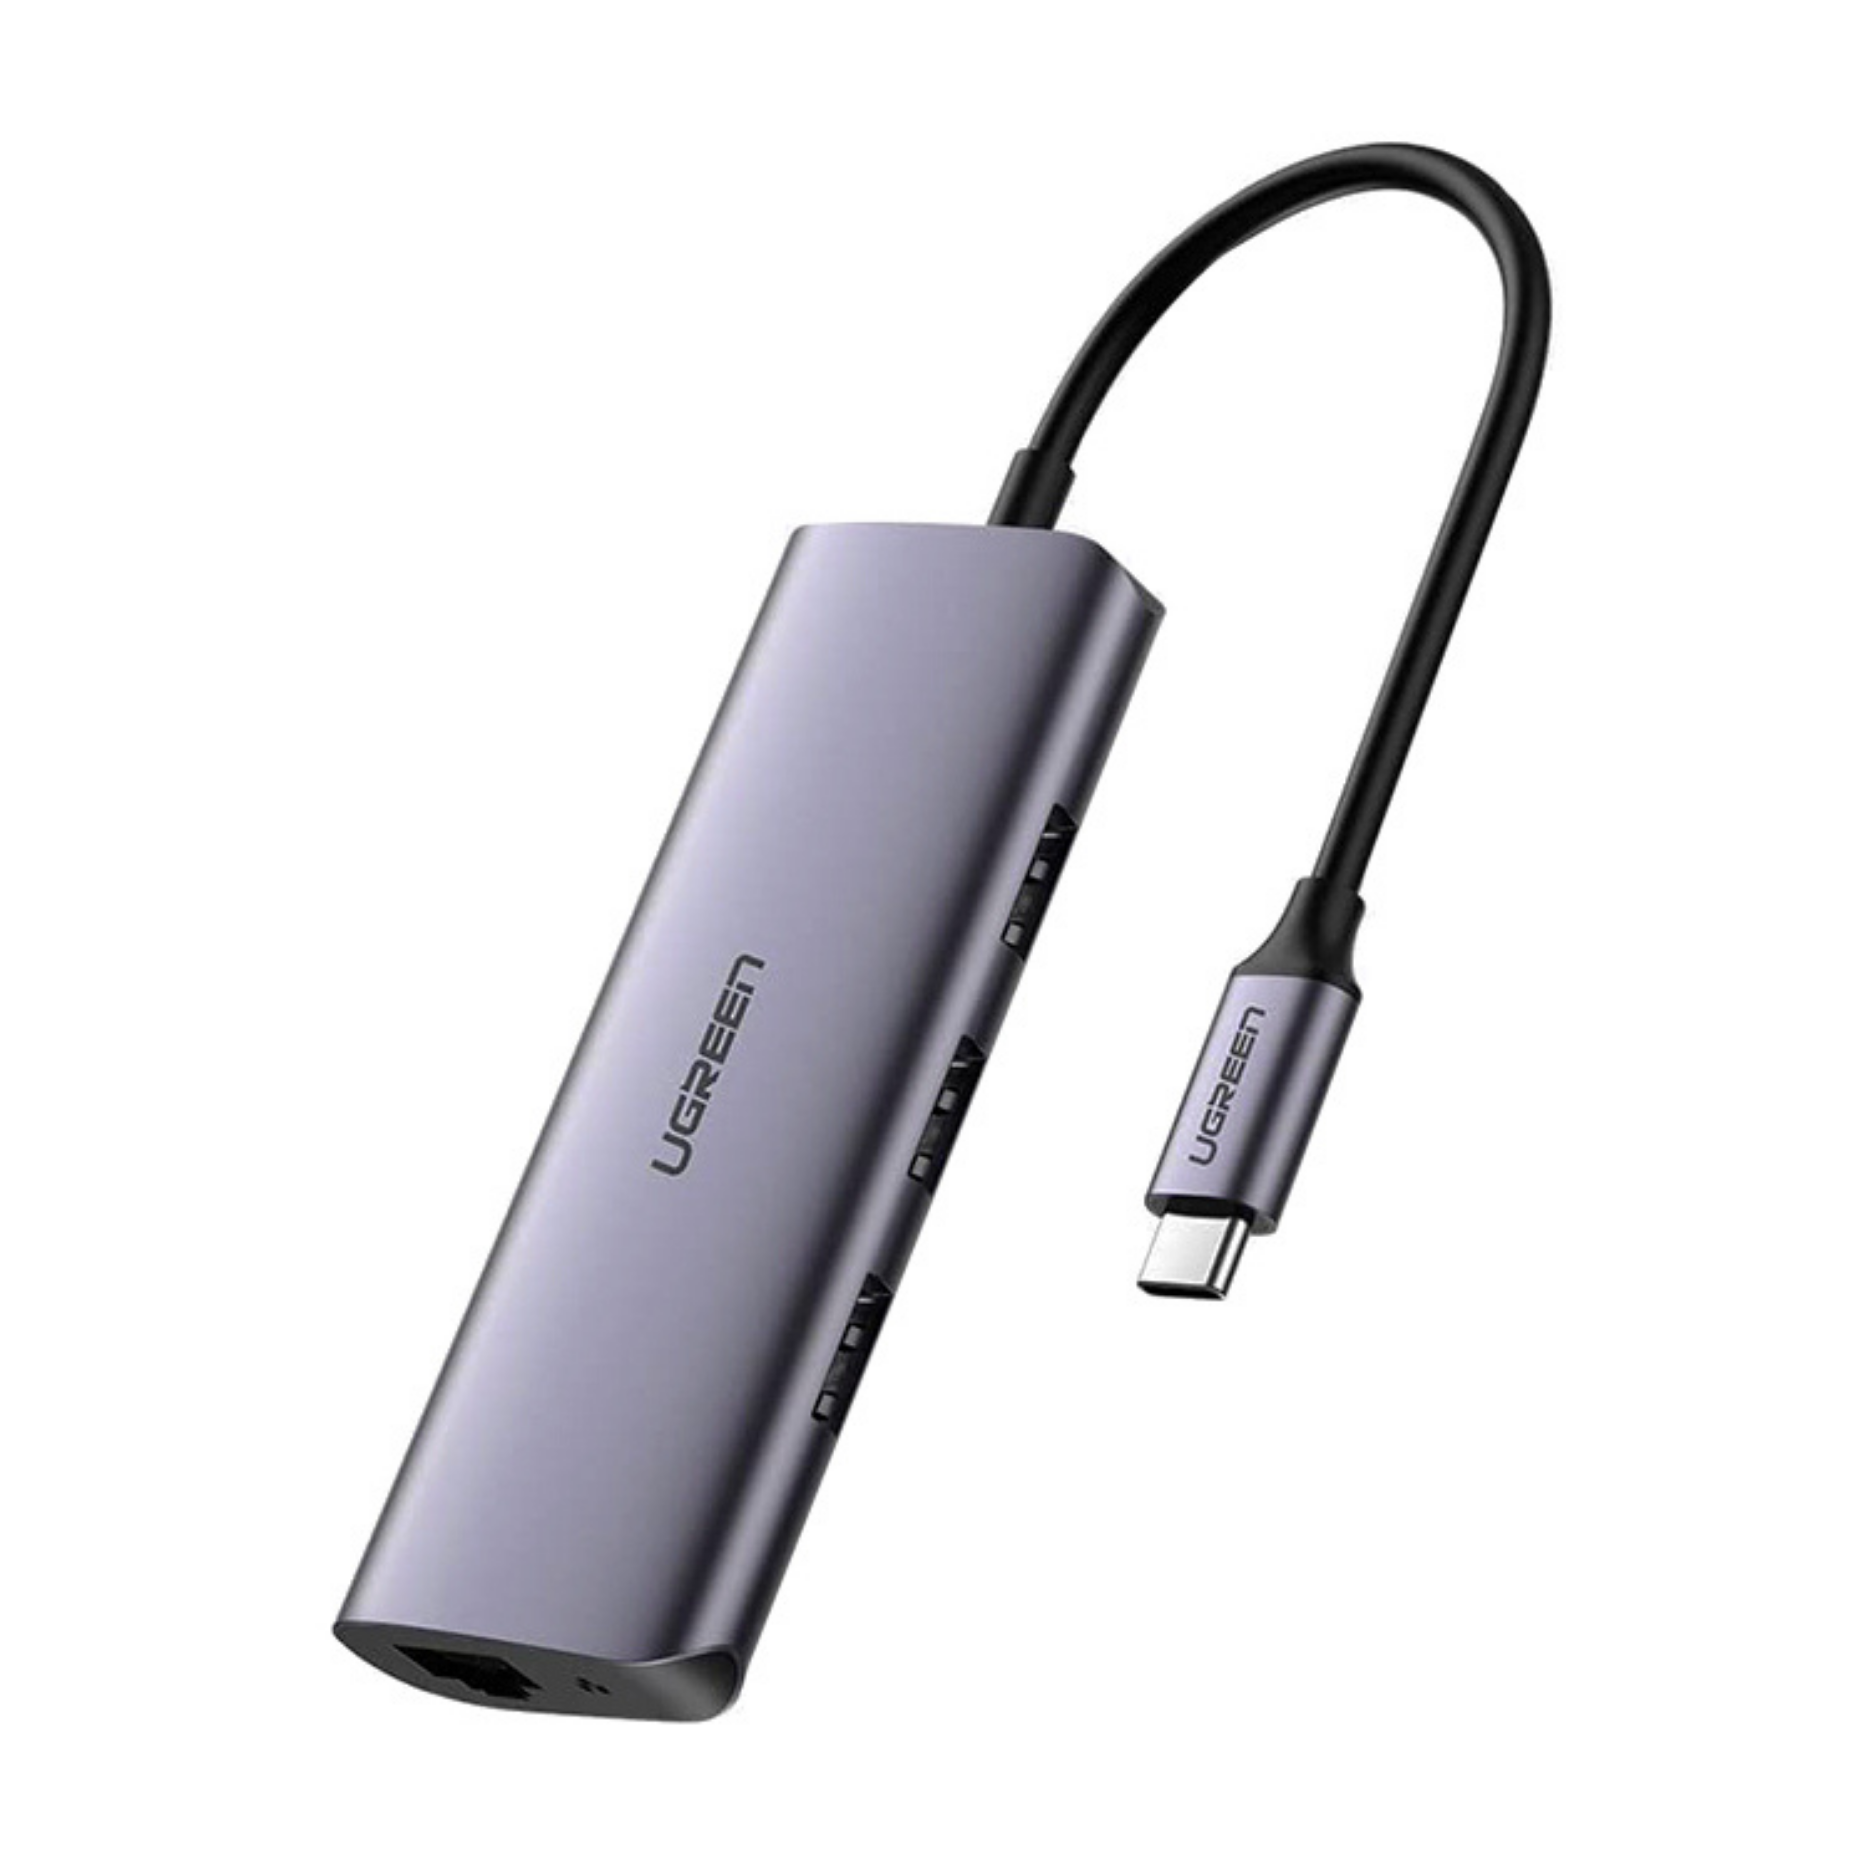 Hub adaptador USB-C Ugreen 4-en-1 RJ45, USB 3.0 (60718)